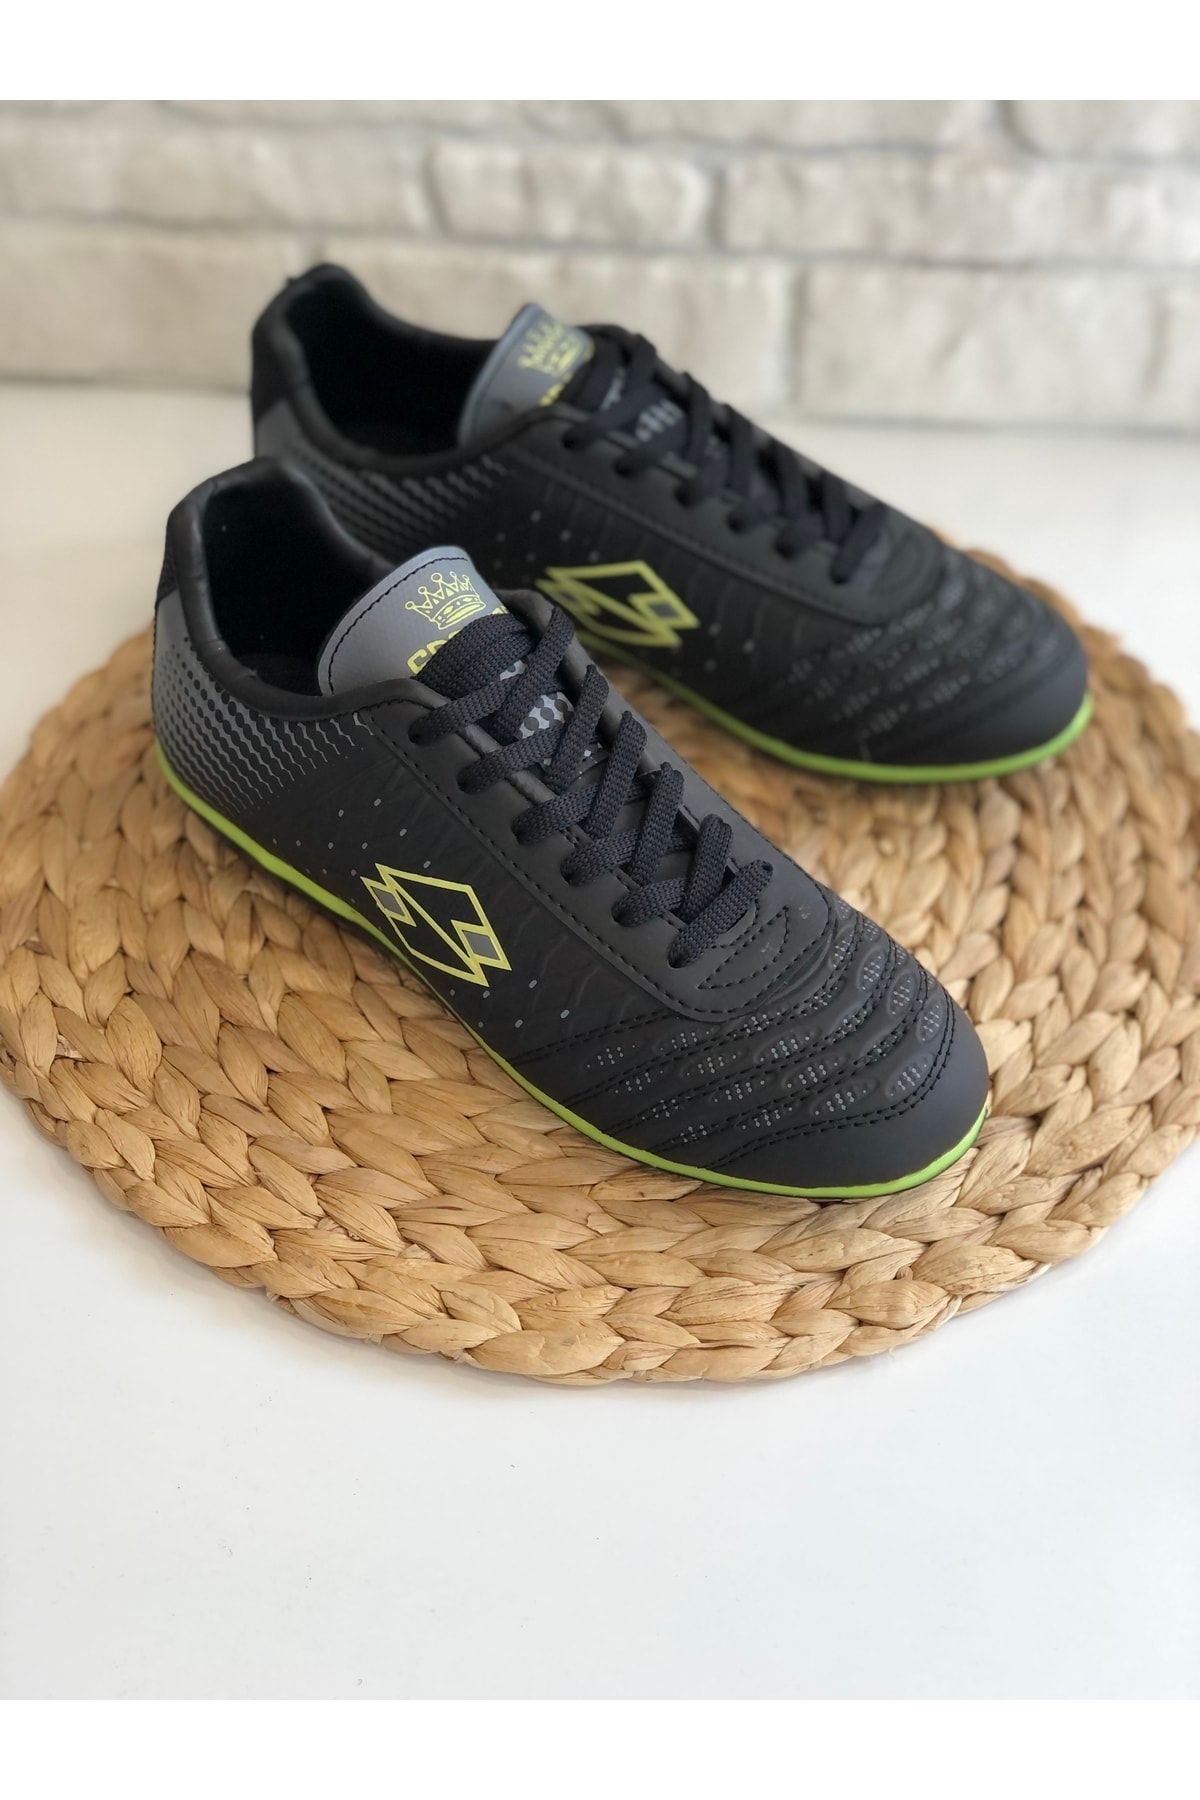 SPORTAÇ Yeni Sezon Halı Saha Futbol Ayakkabısı Siyah-Yeşil